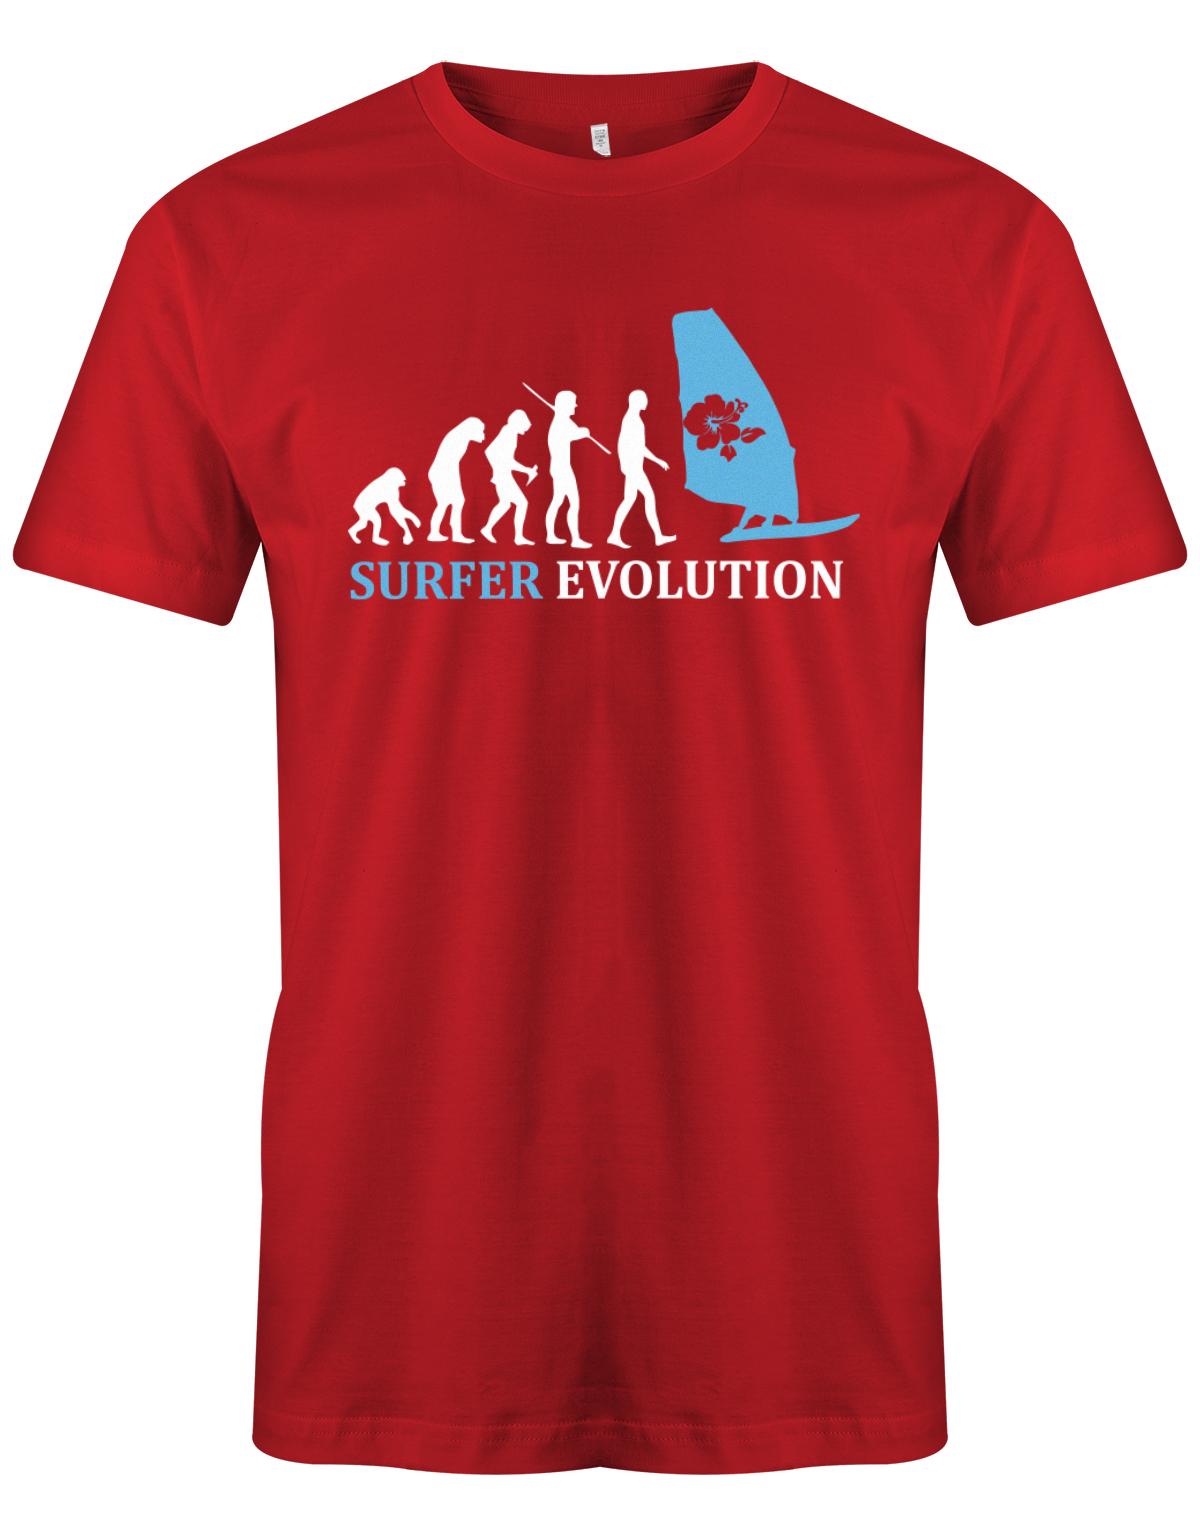 Surfer-Evolution-Surf-Herren-Shirt-Rot